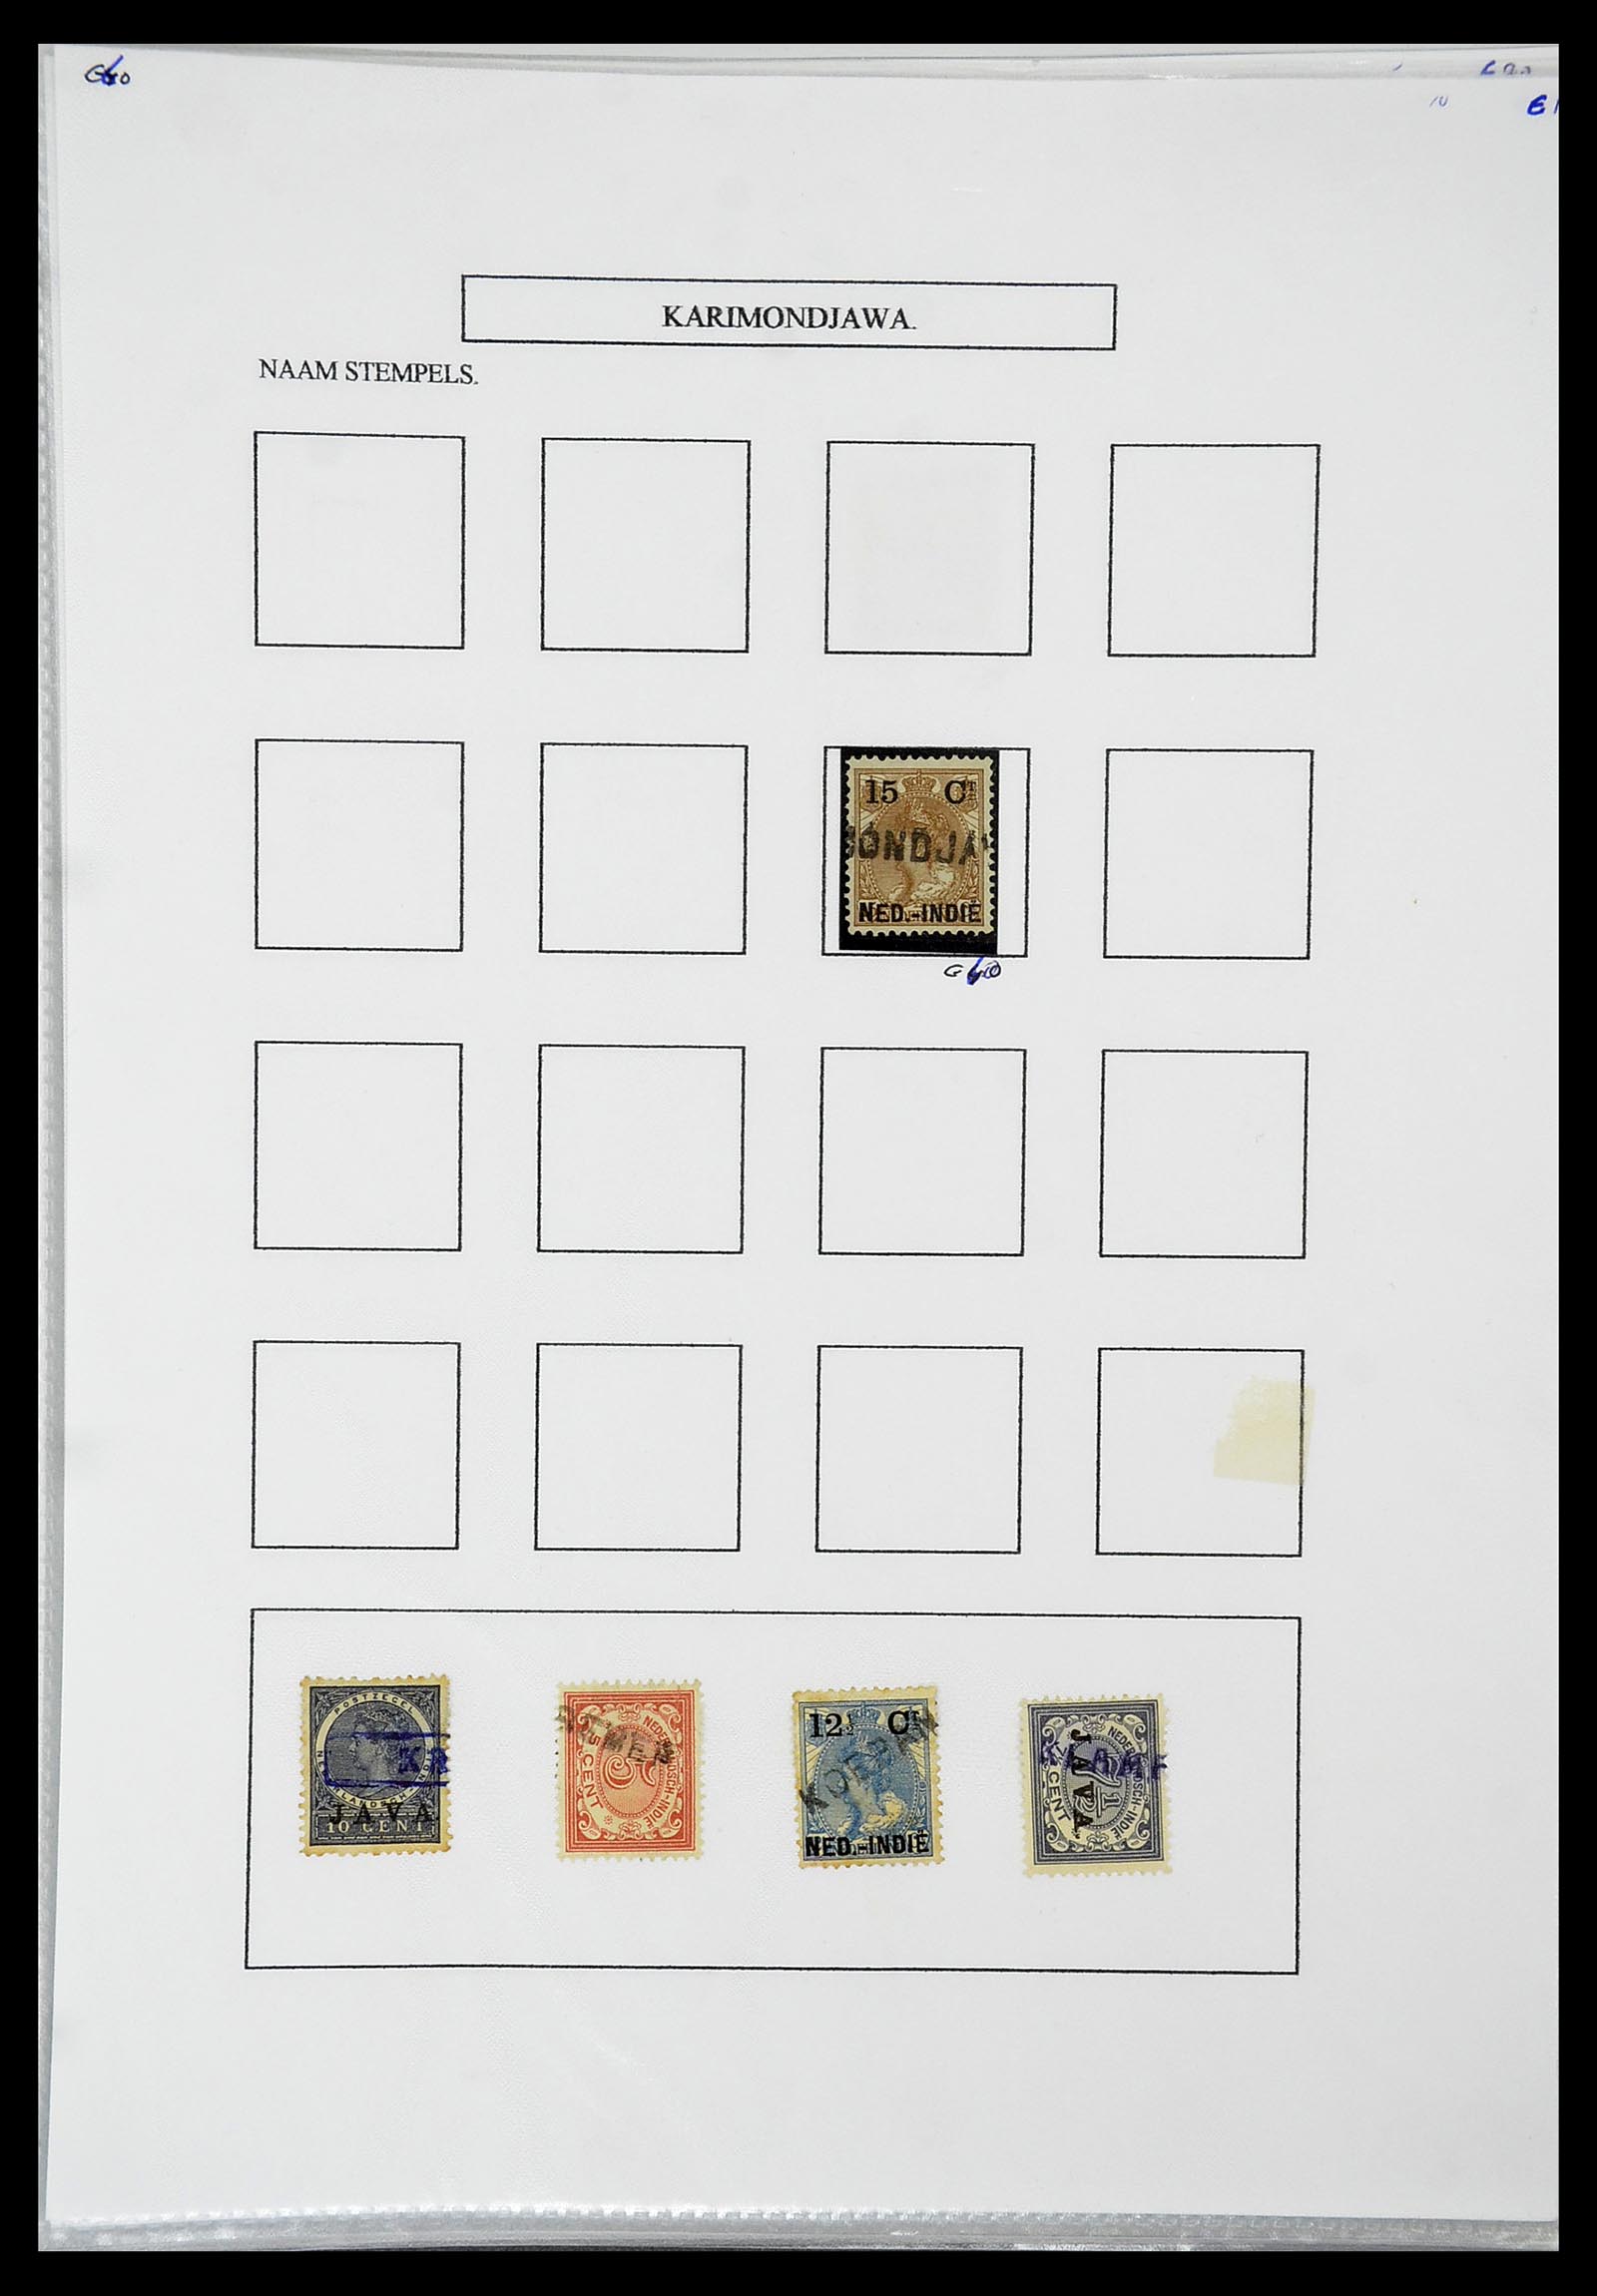 34663 031 - Postzegelverzameling 34663 Nederlands Indië naamstempels.